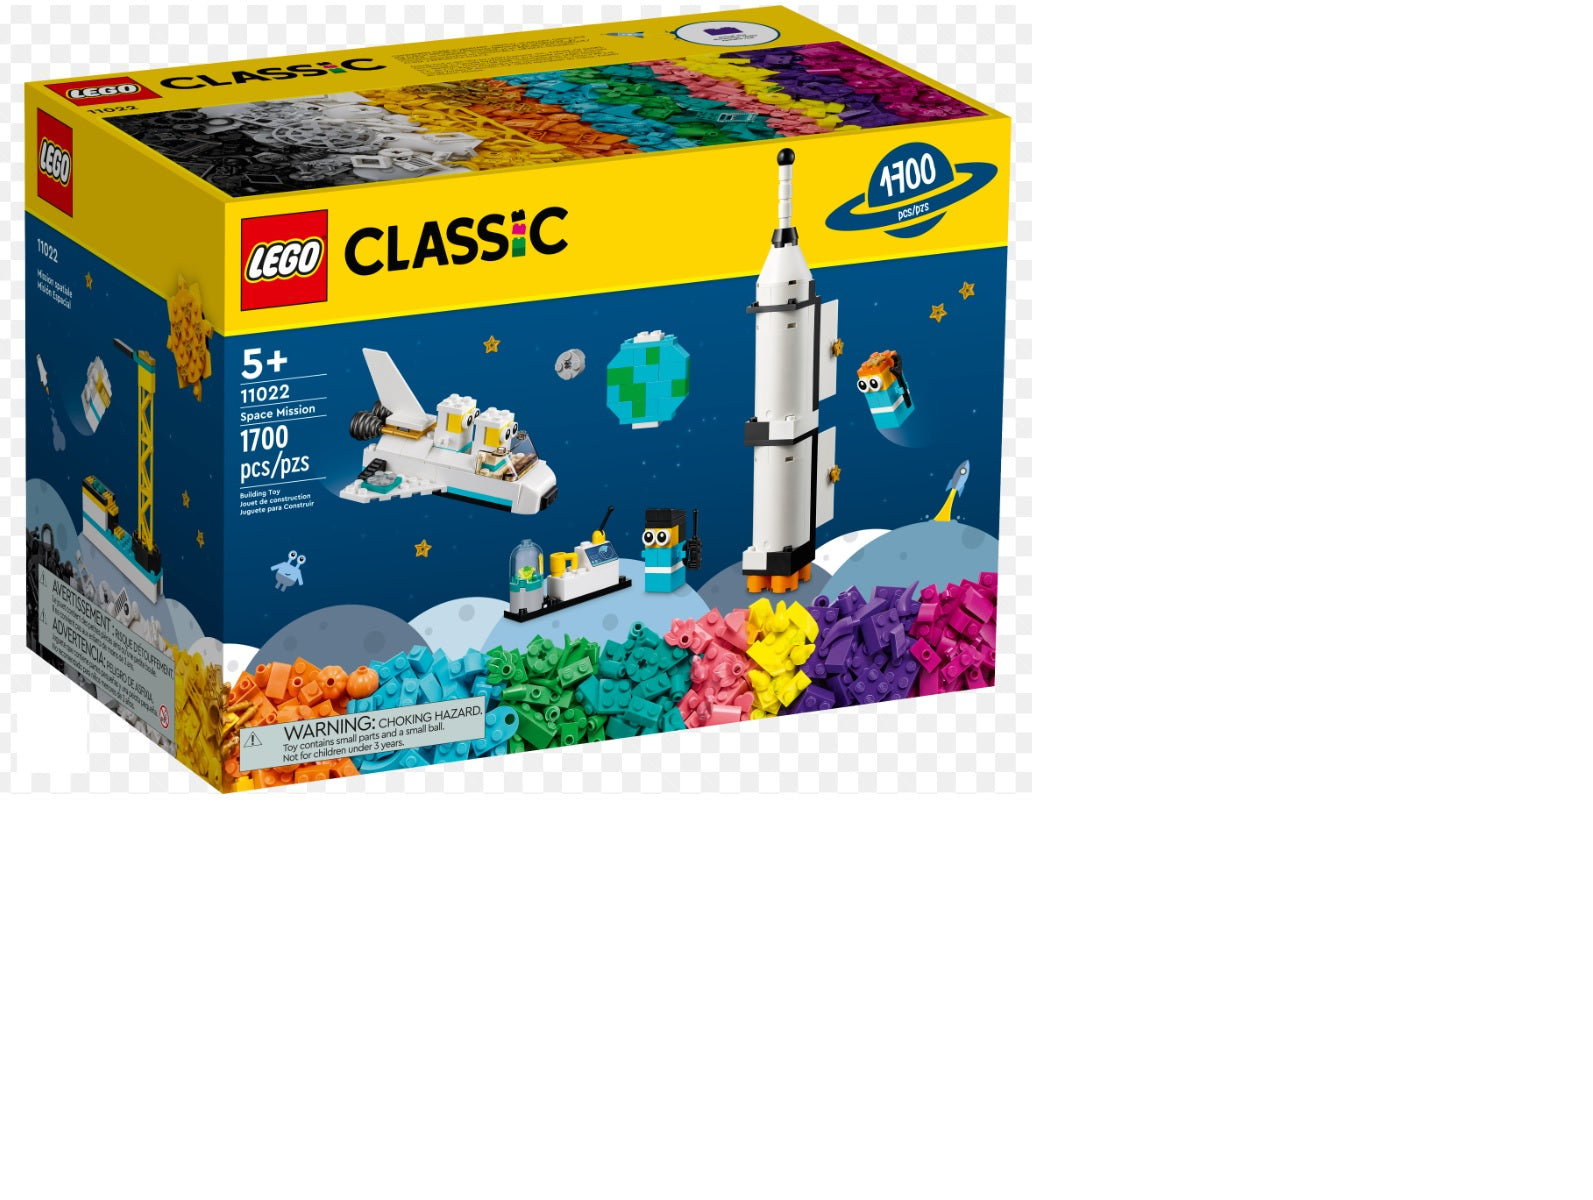 Lego Classic - 1700 Pcs